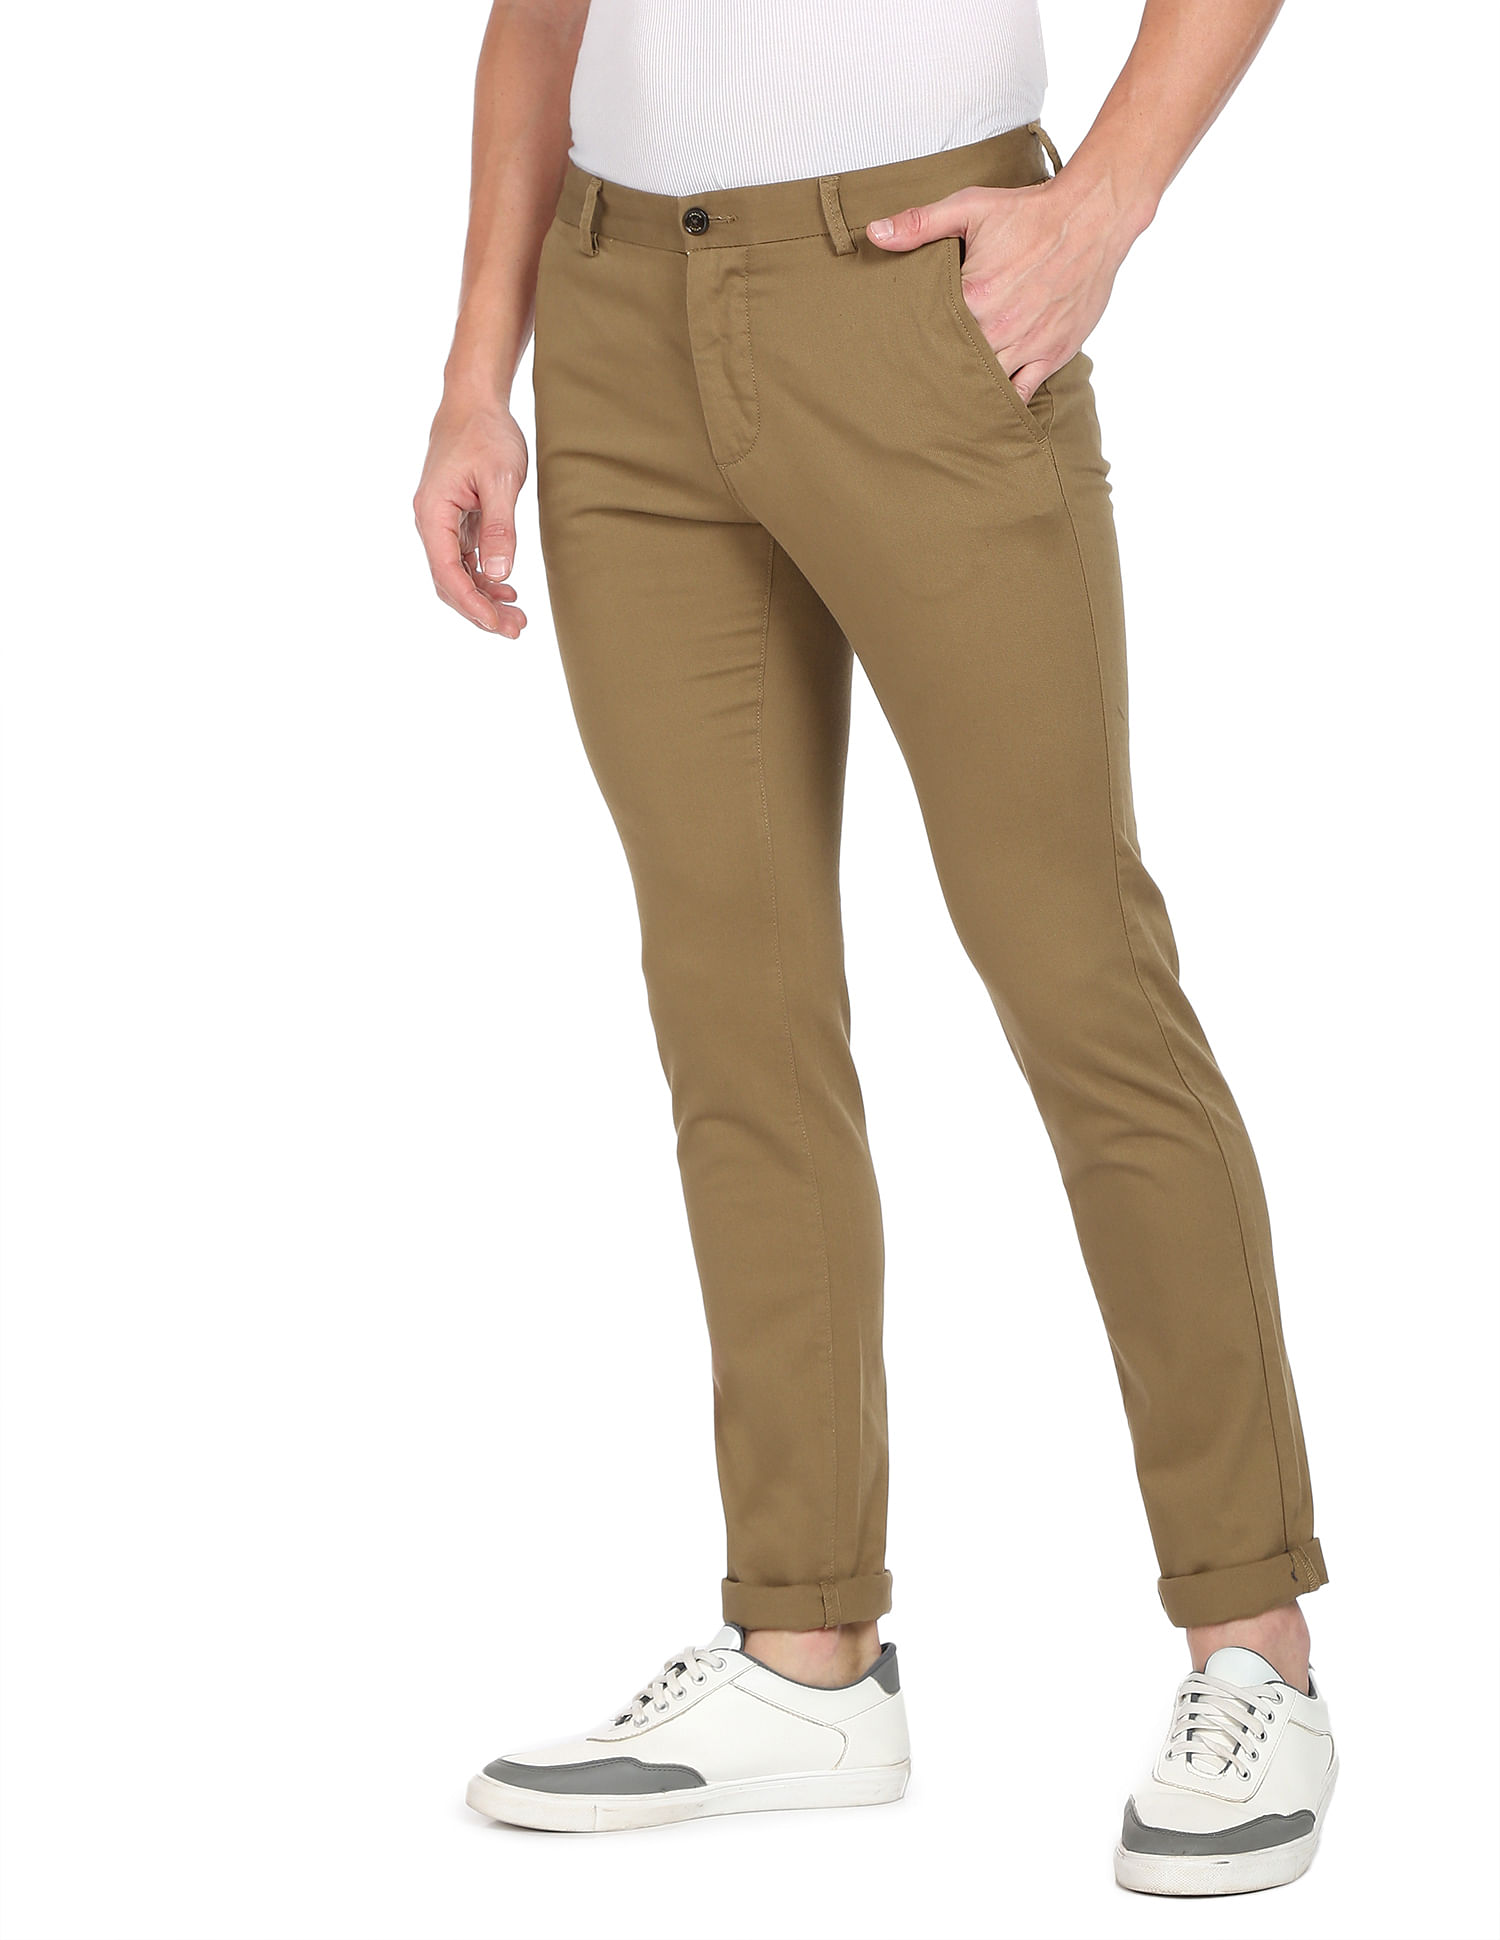 Buy ARROW SPORT Khaki Checks Cotton Blend Slim Fit Mens Trousers | Shoppers  Stop